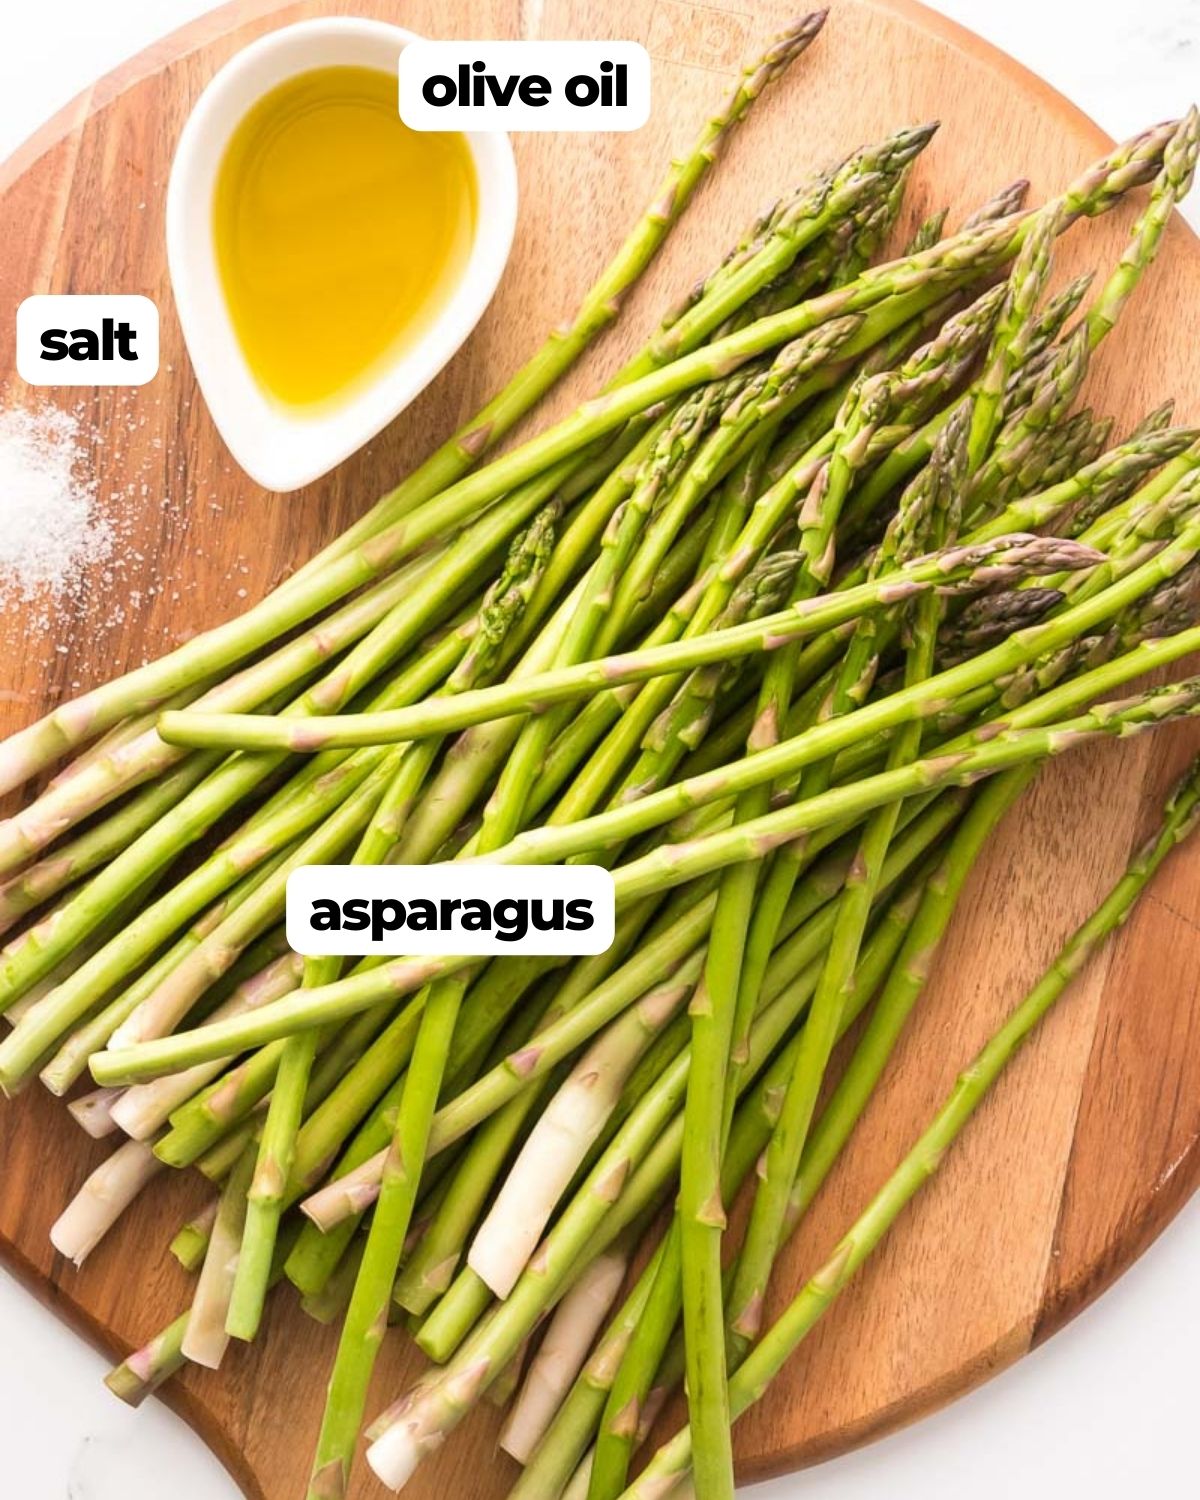 Air fryer asparagus labeled ingredients